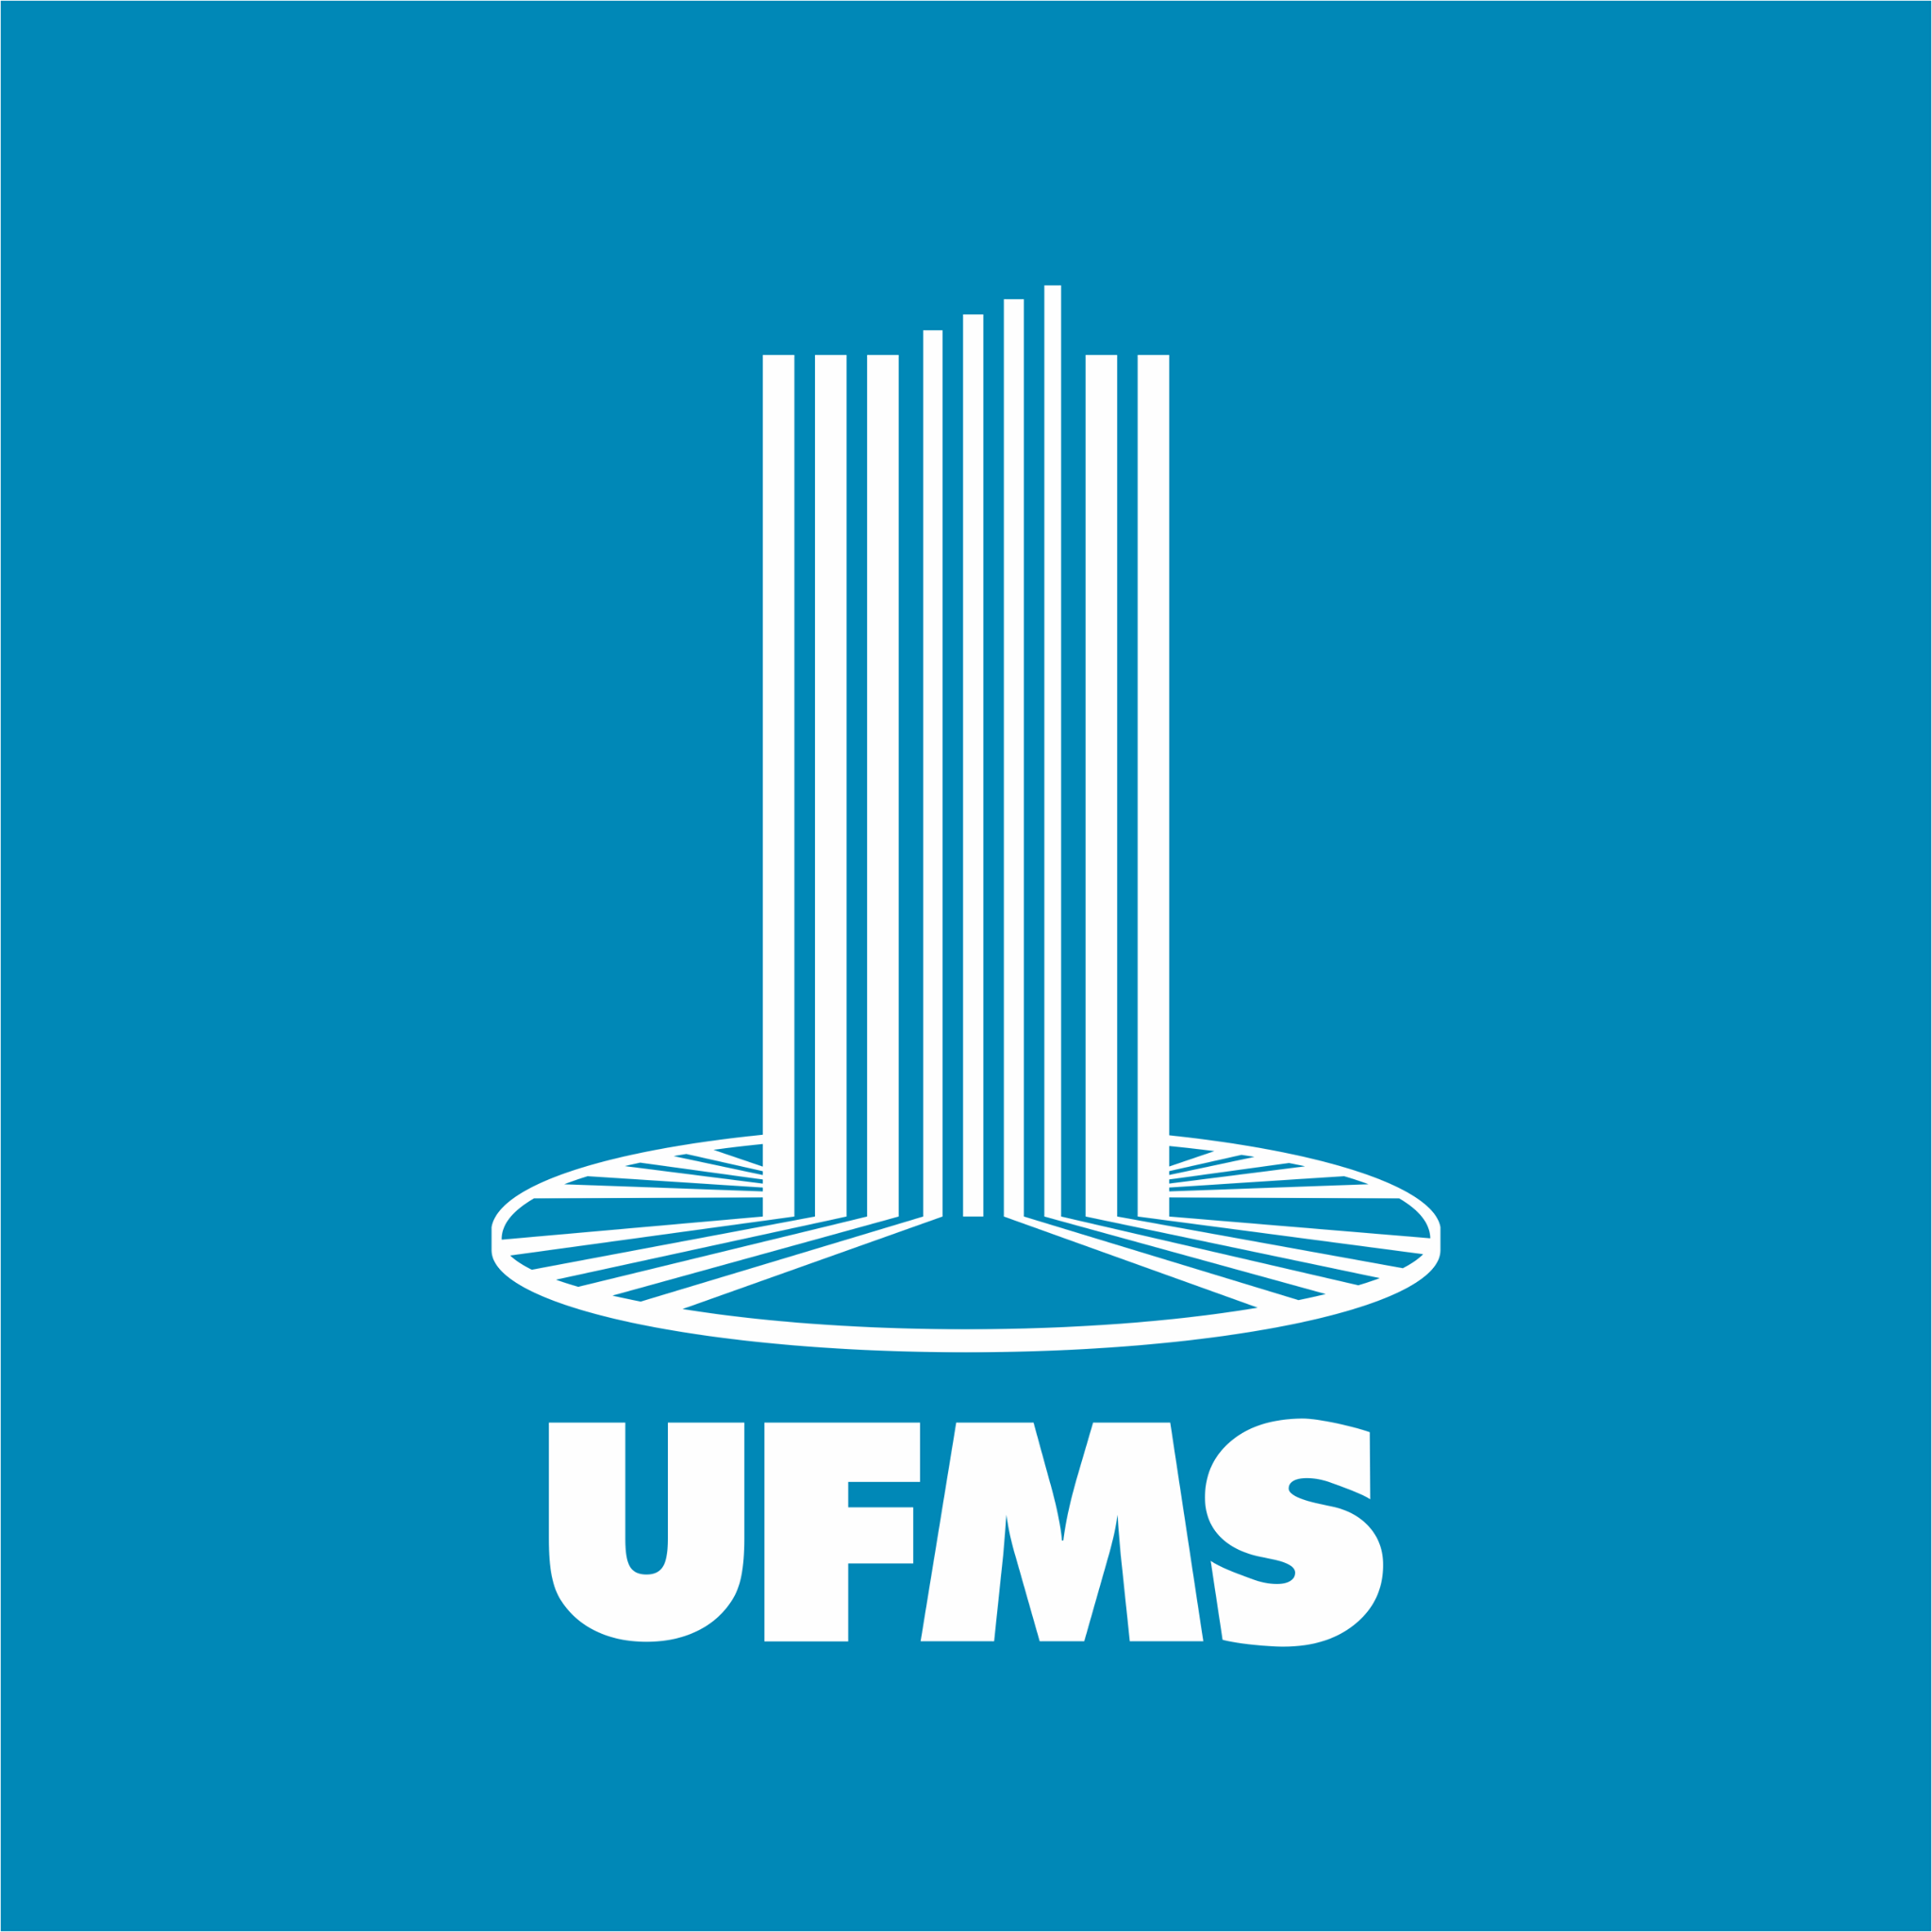 cursos de mestrado e doutorado gratuitos da ufms abrem inscrições